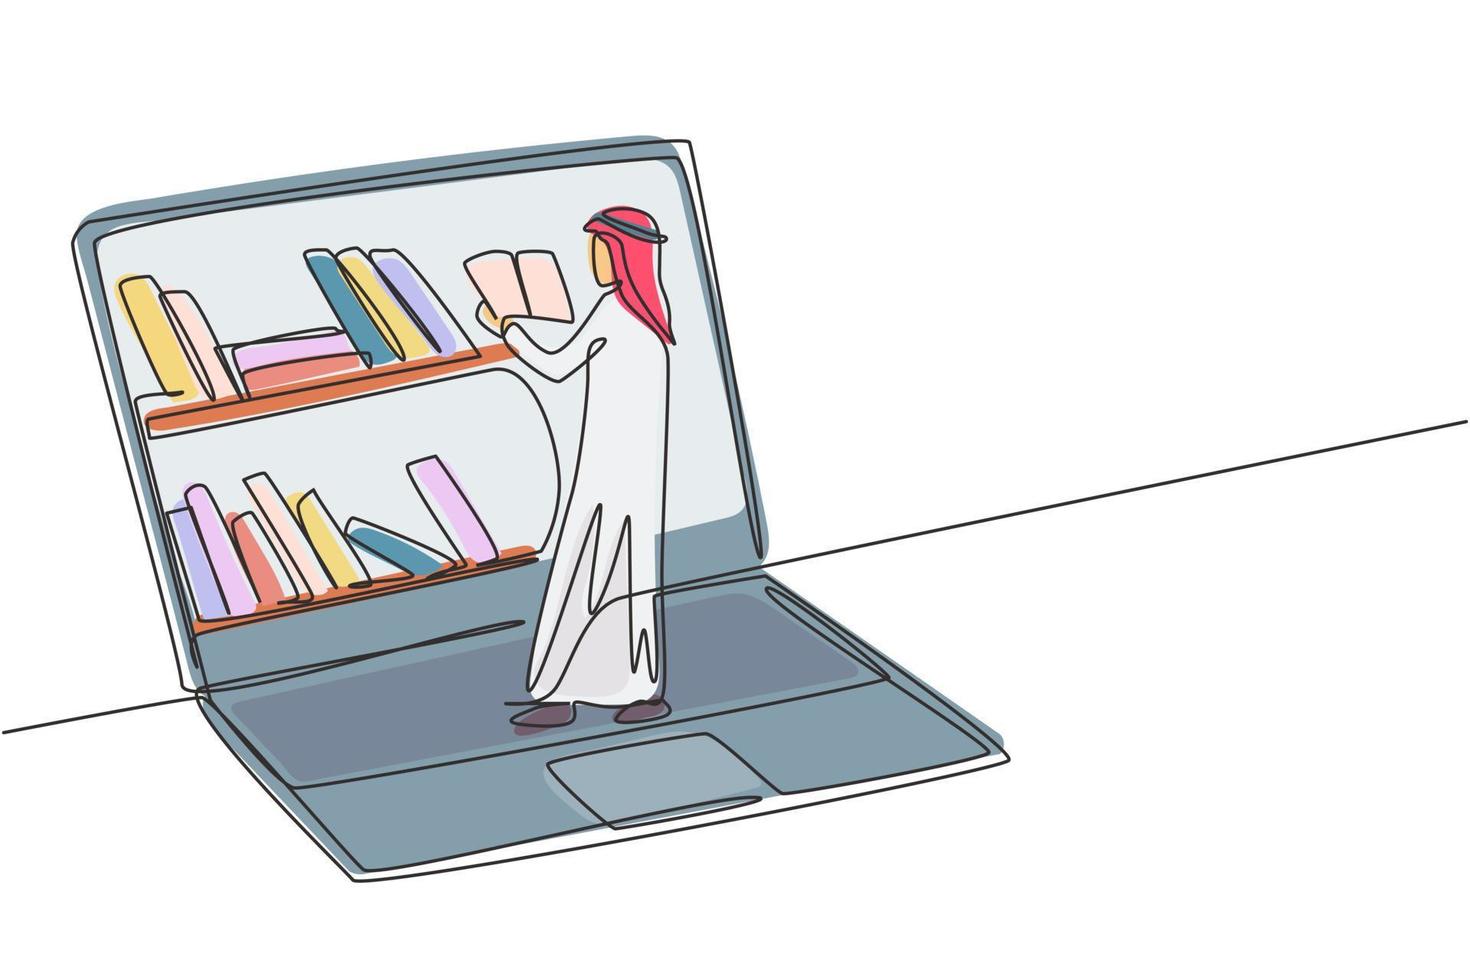 enda kontinuerlig linje ritning ung arabisk manlig college student läsa bok medan du står framför laptop skärm med bokhylla på skärmen. dynamisk en rad rita grafisk design vektorillustration vektor